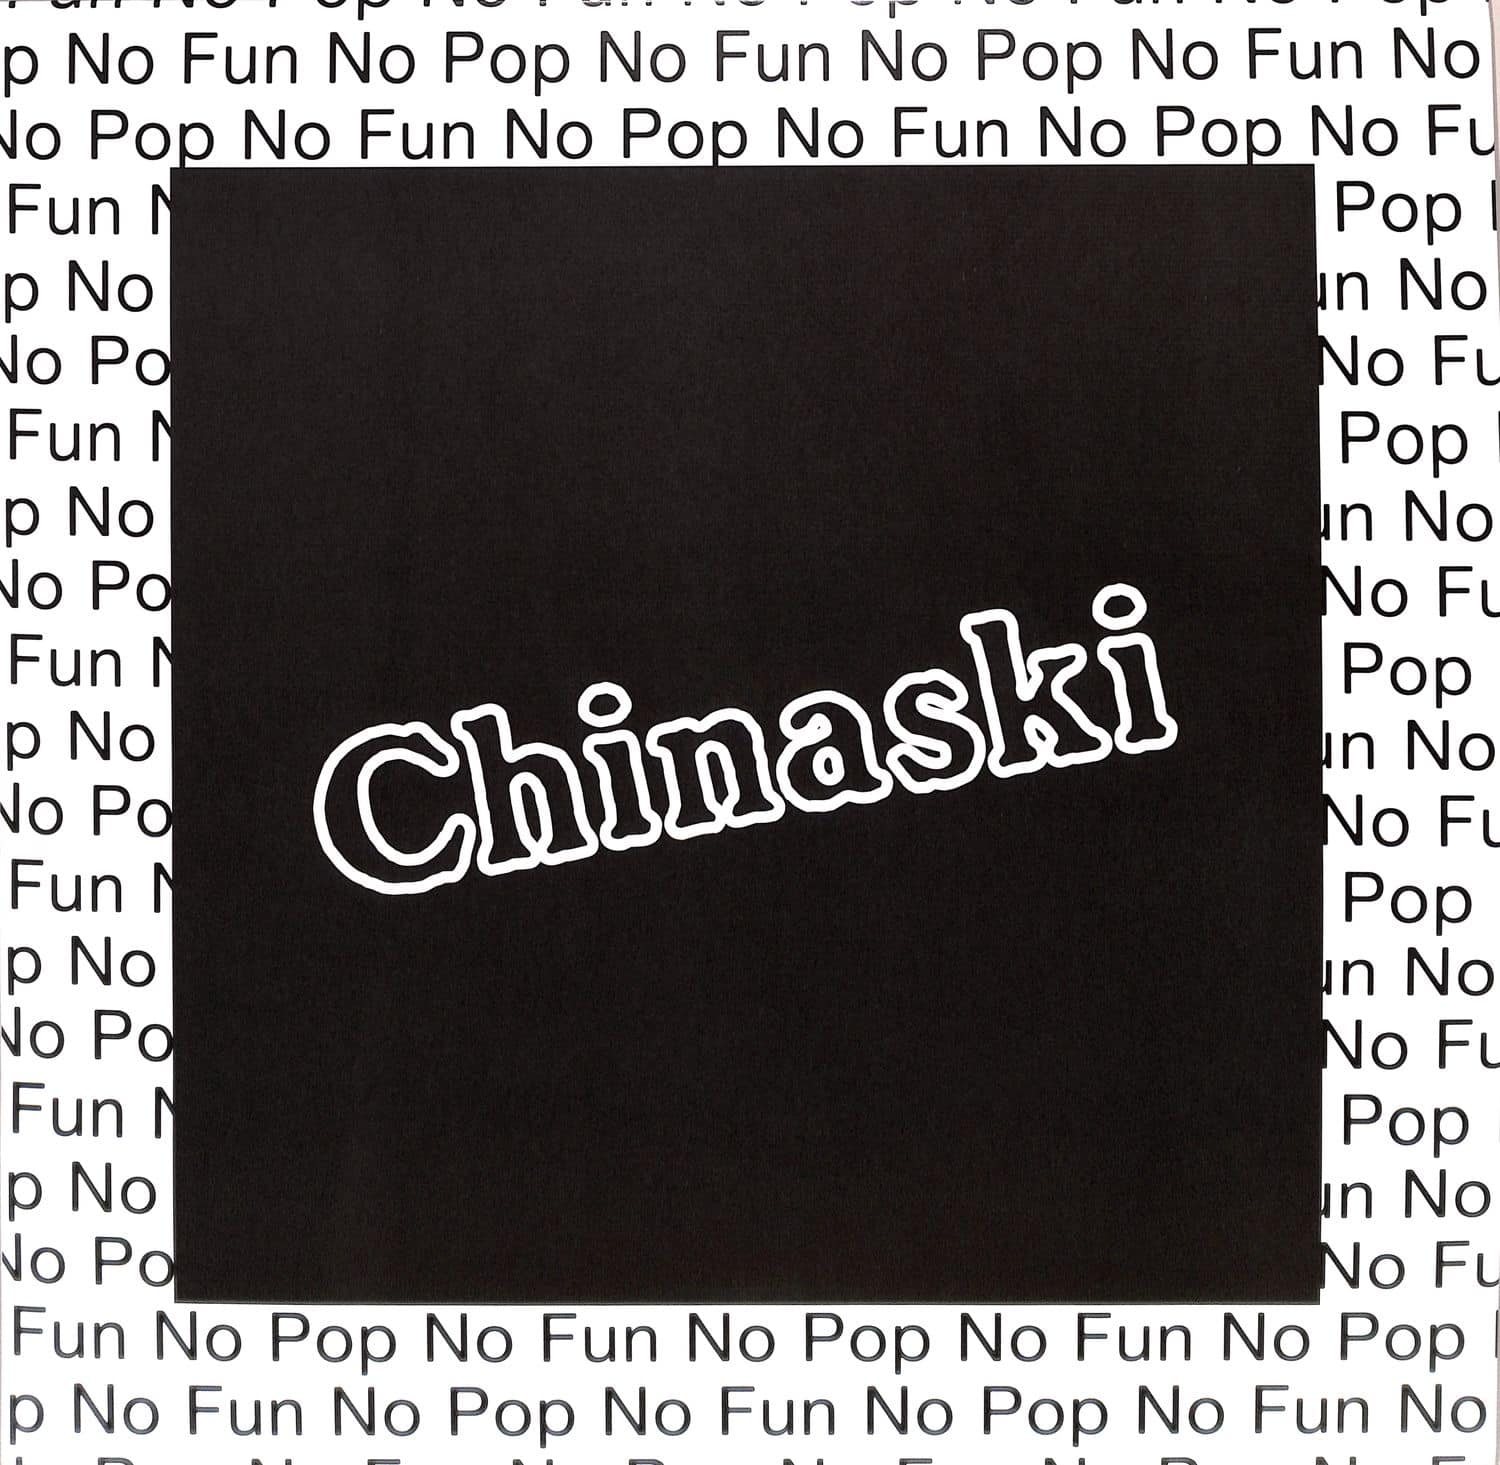 Chinaski - NO POP NO FUN 